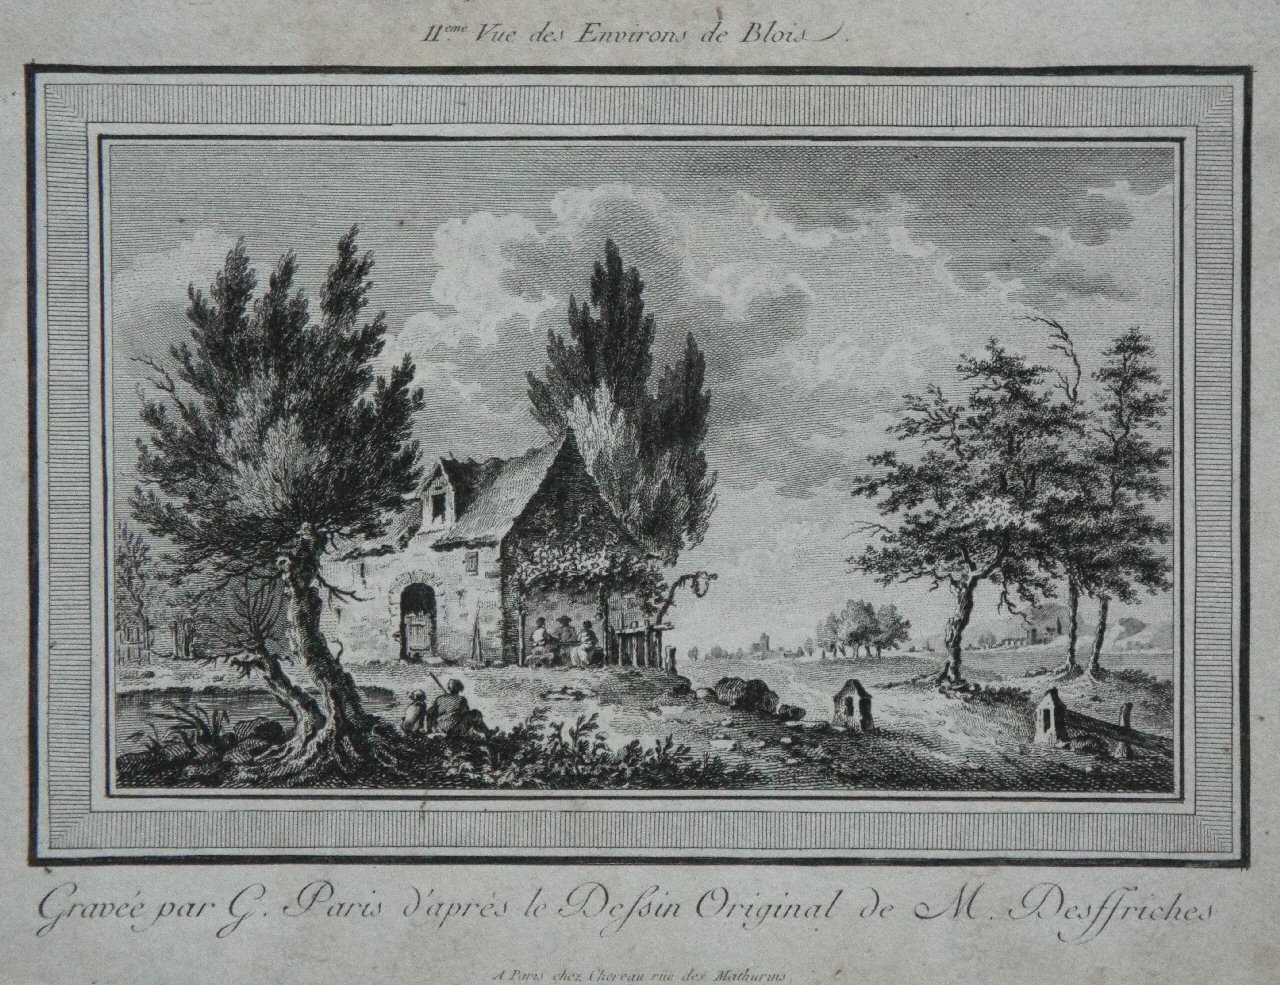 Print - II eme Vue des Environs de Blois. Gravee par G. Paris d'apres le Dessin Original d M. Desffriches - Paris